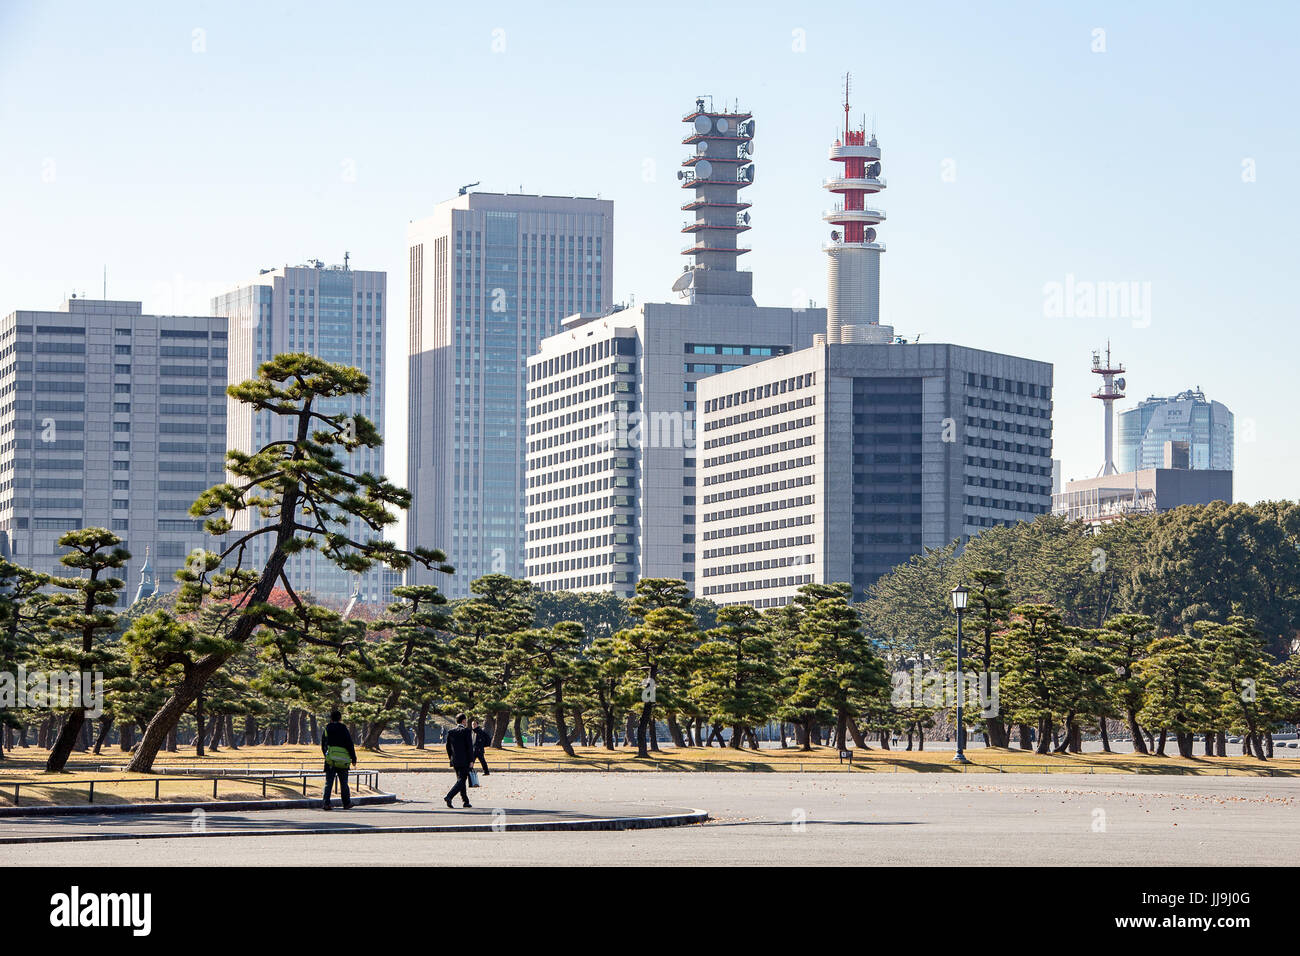 La gente a piedi attraverso un parco di pini su uchibori dori road, Tokyo con il dipartimento di polizia e altri edifici del governo in background Foto Stock